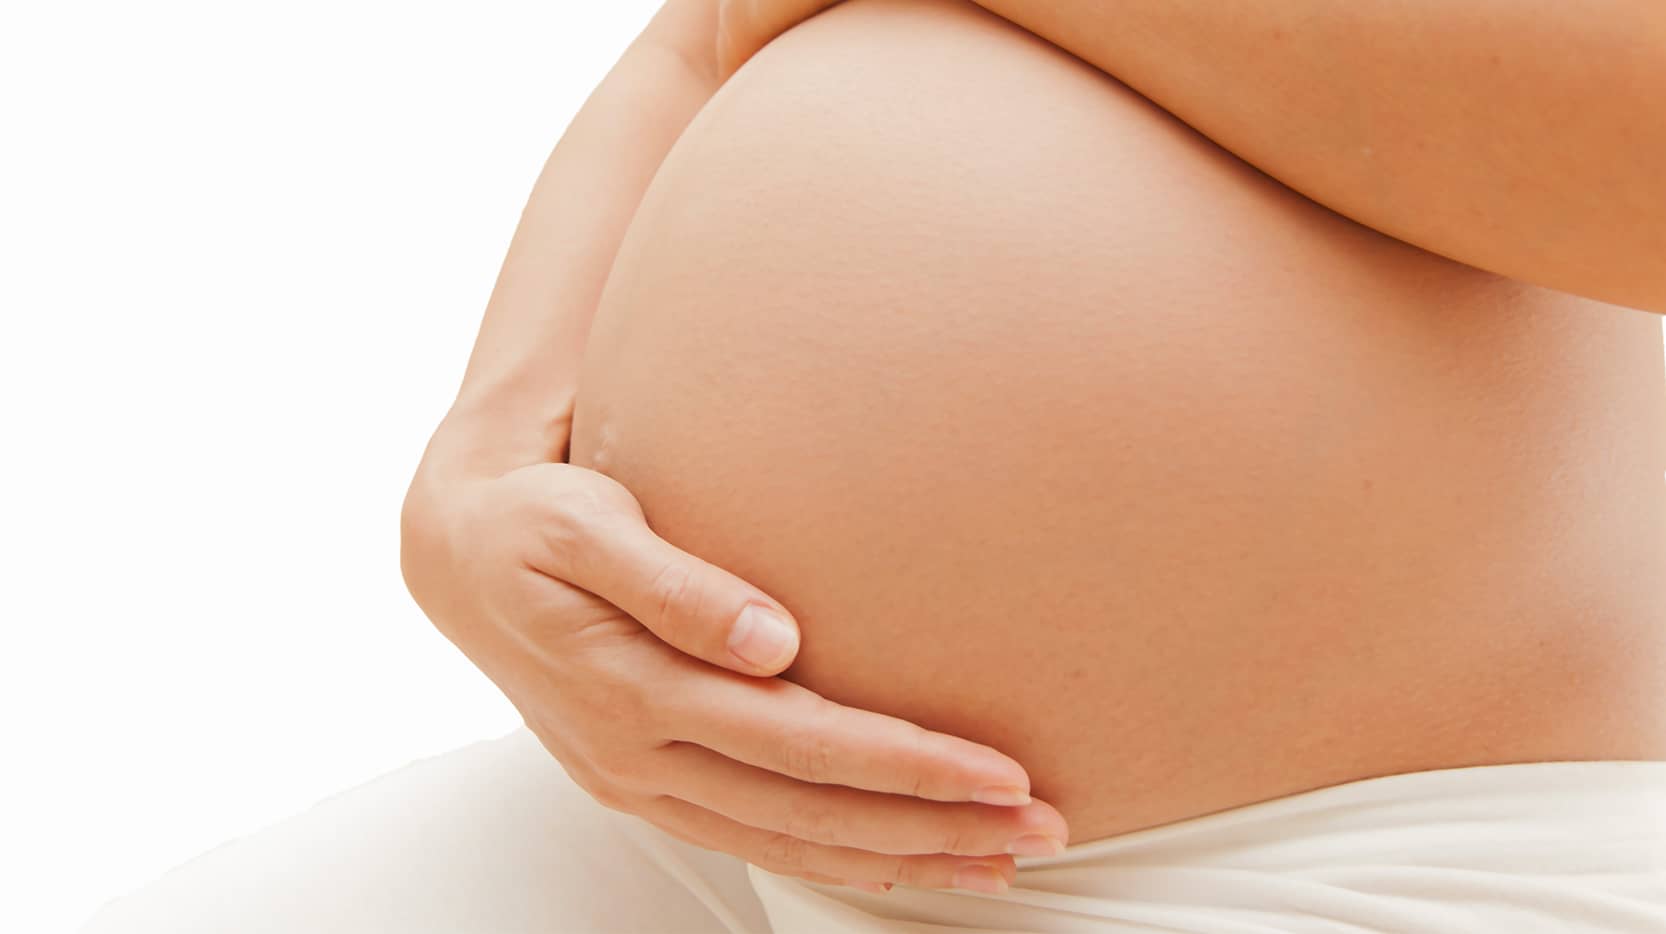 L’anneau gastrique est-il compatible lors d’une grossesse ?| Dr Servajean